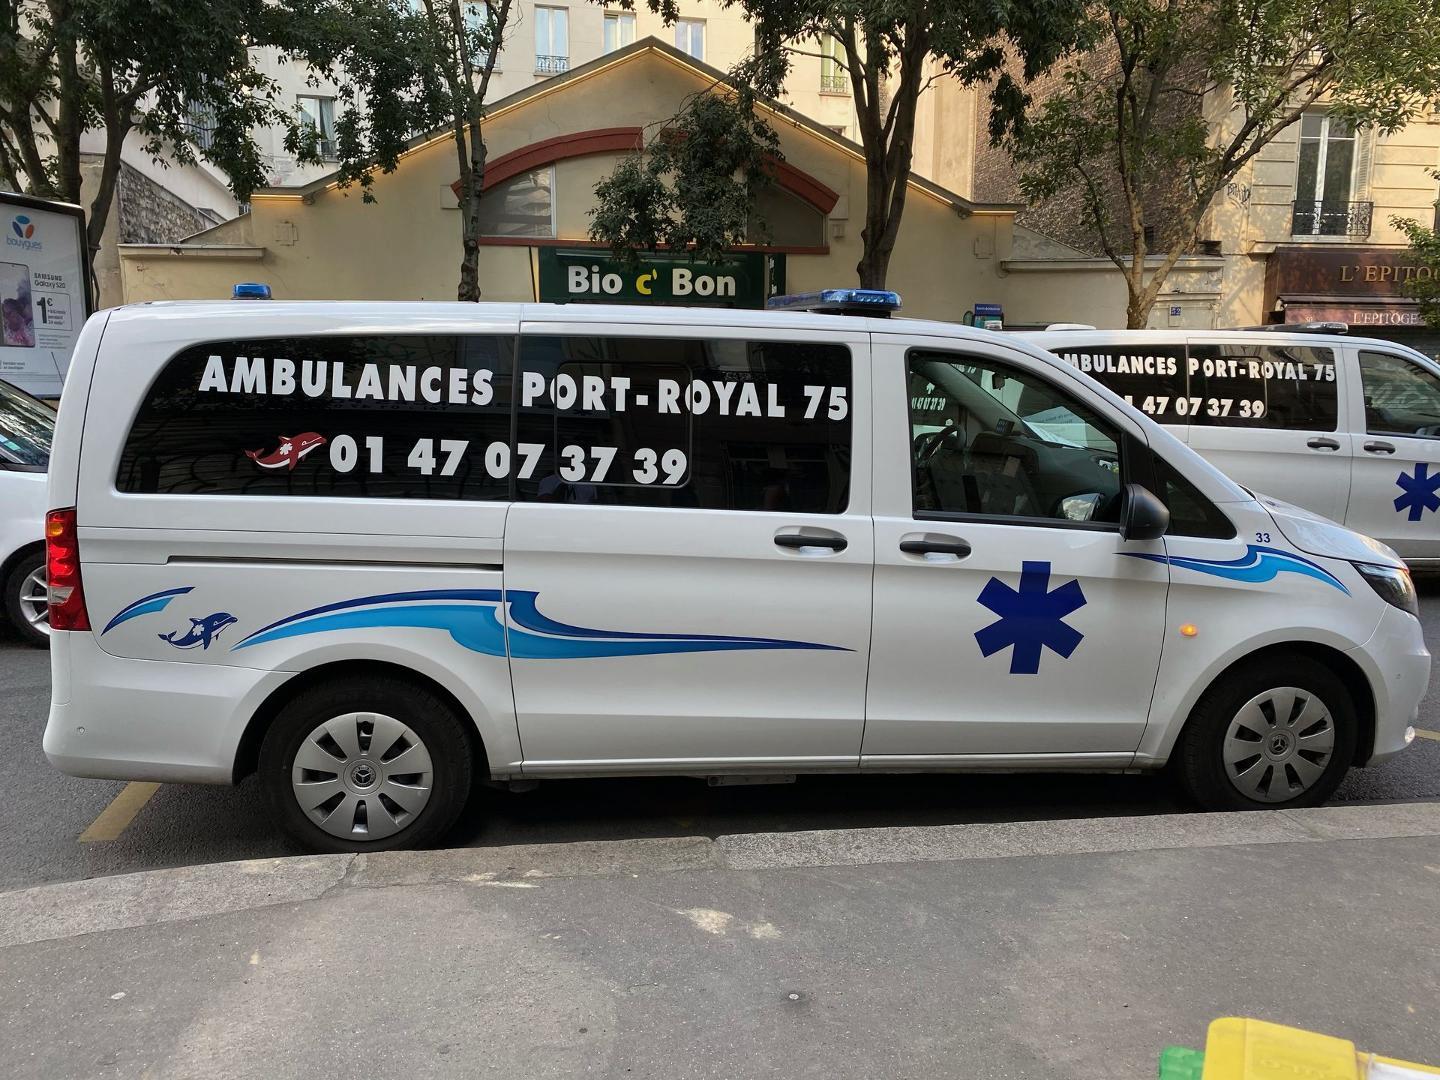 Ambulances Port Royal 75 Paris